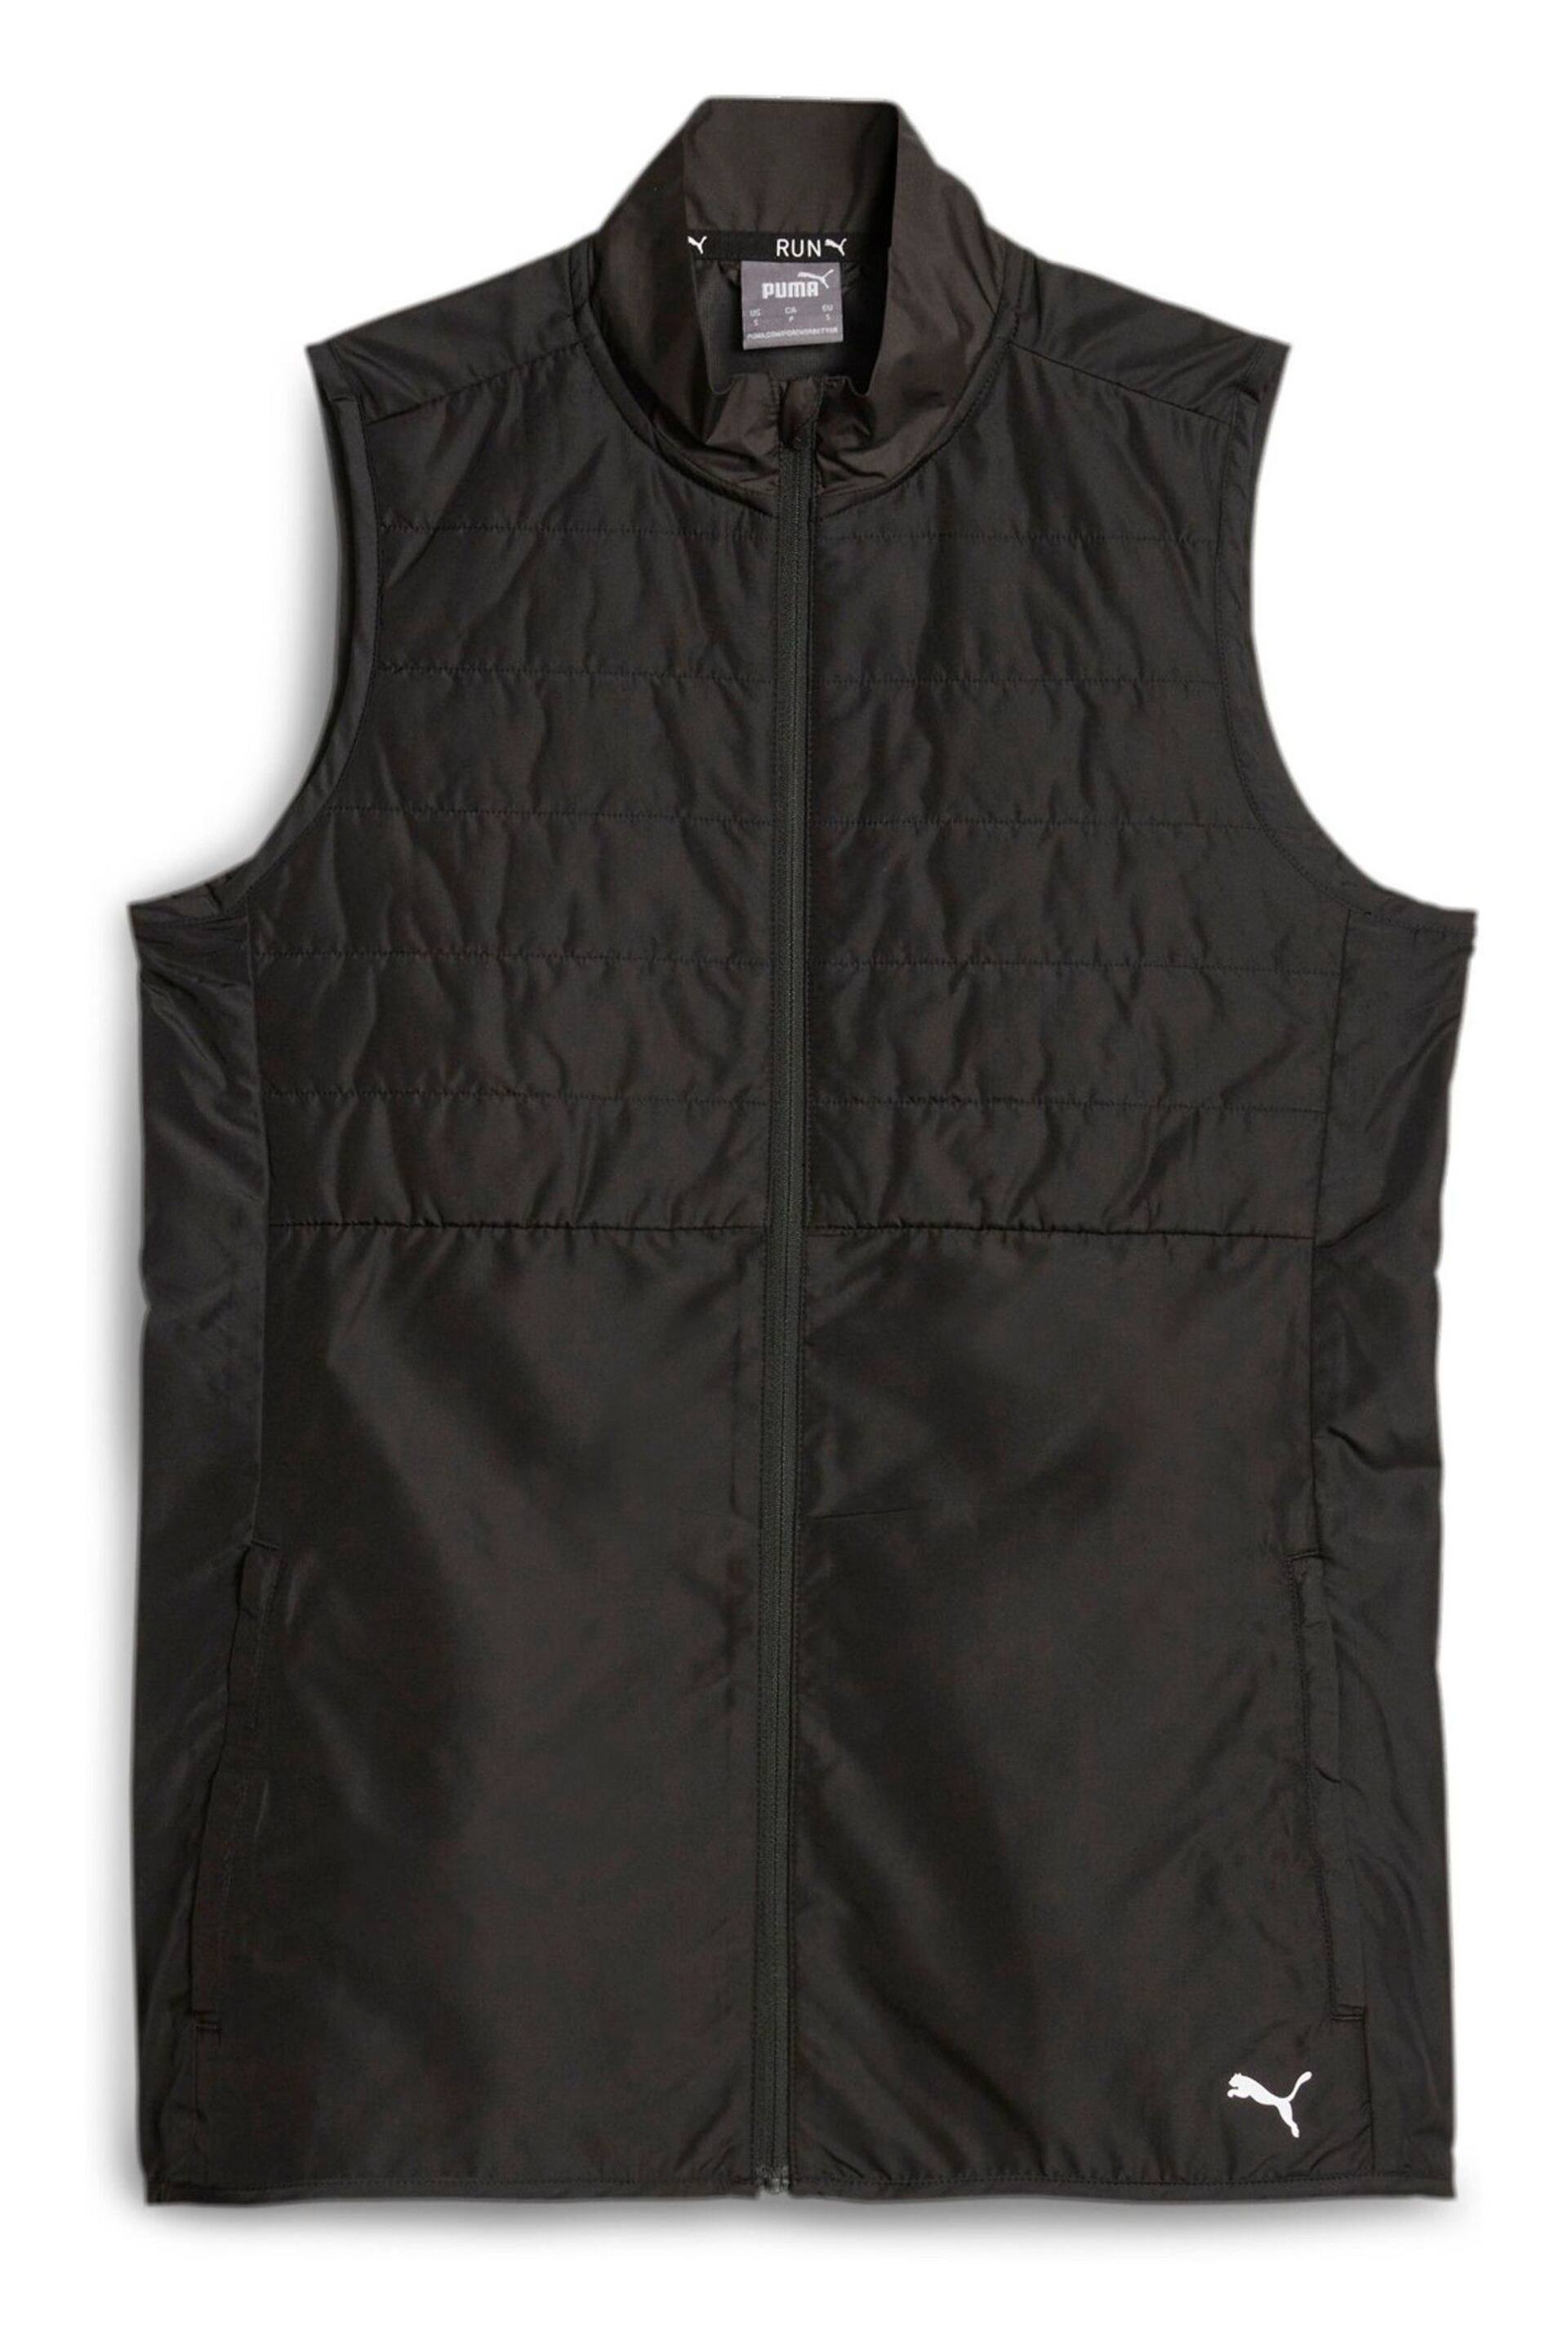 Puma Black Run Favourite Womens Running Puffer Vest - Image 6 of 7